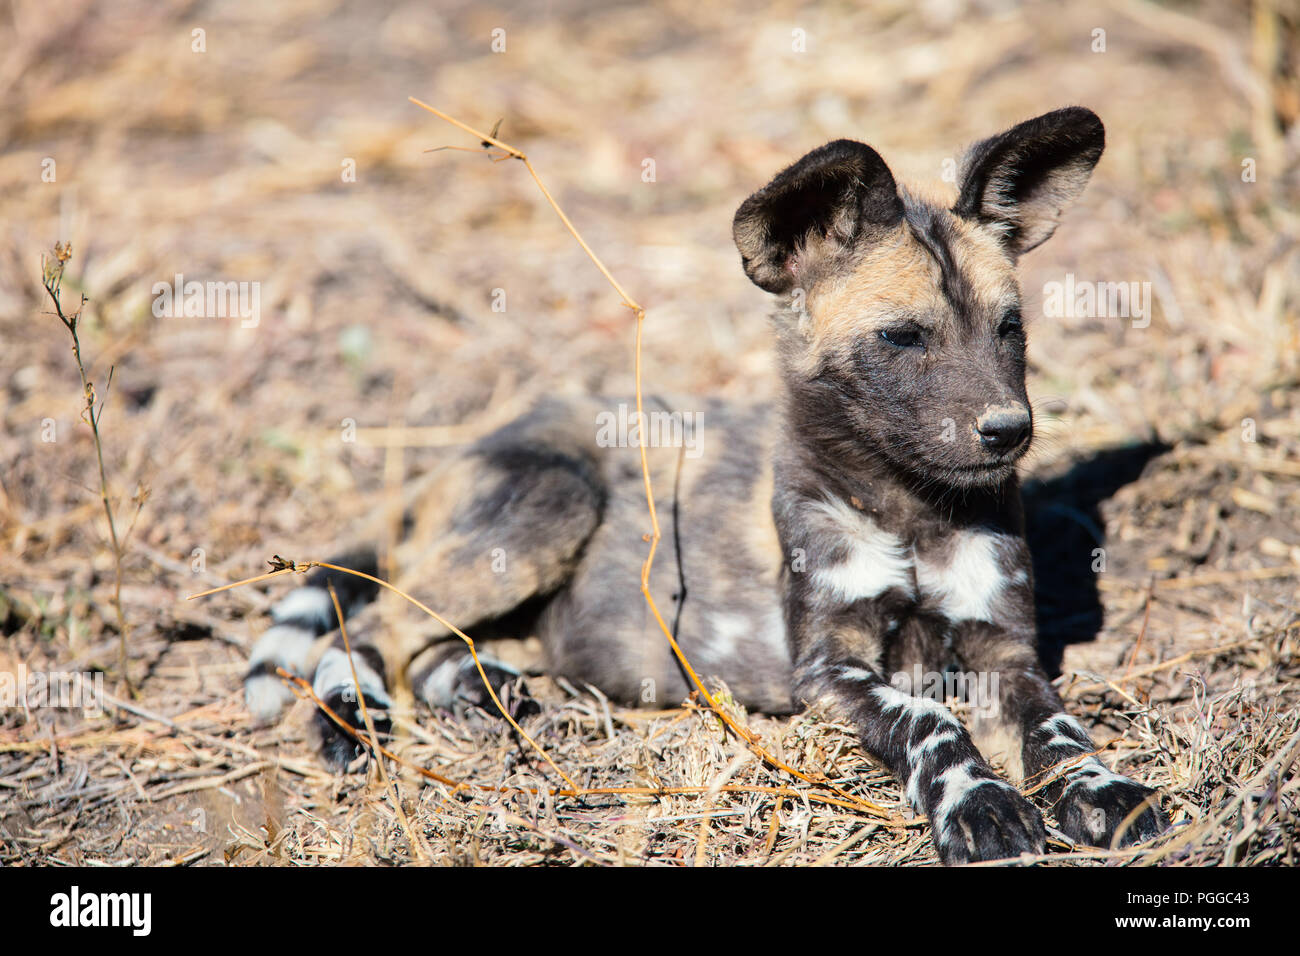 Animales en peligro de cachorro de perro salvaje africana parque safari en Sudáfrica Foto de stock